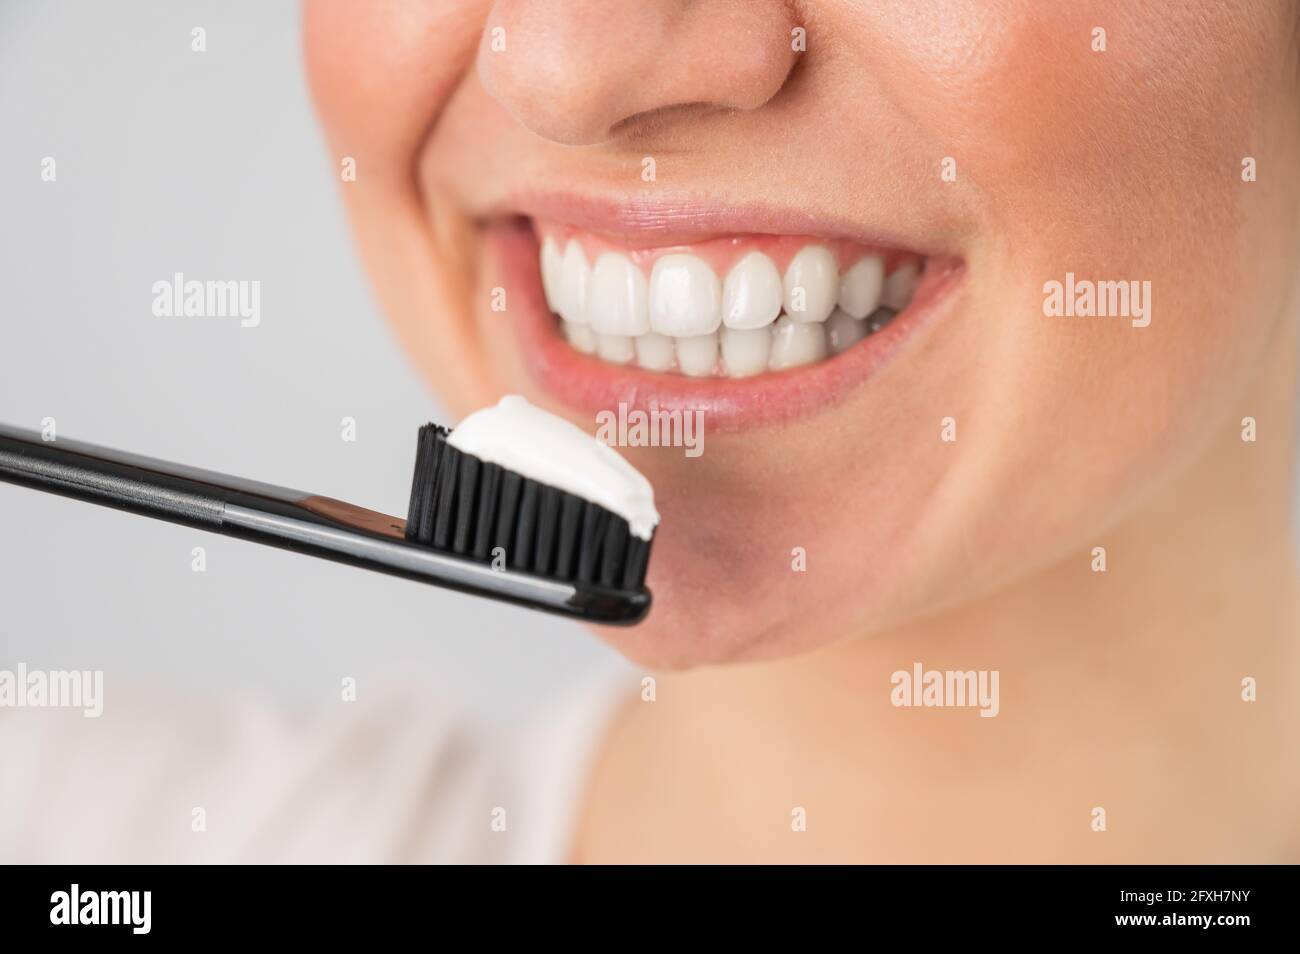 Una mujer con una sonrisa blanca como la nieve sostiene un cepillo de dientes con pegar sobre un fondo blanco Foto de stock